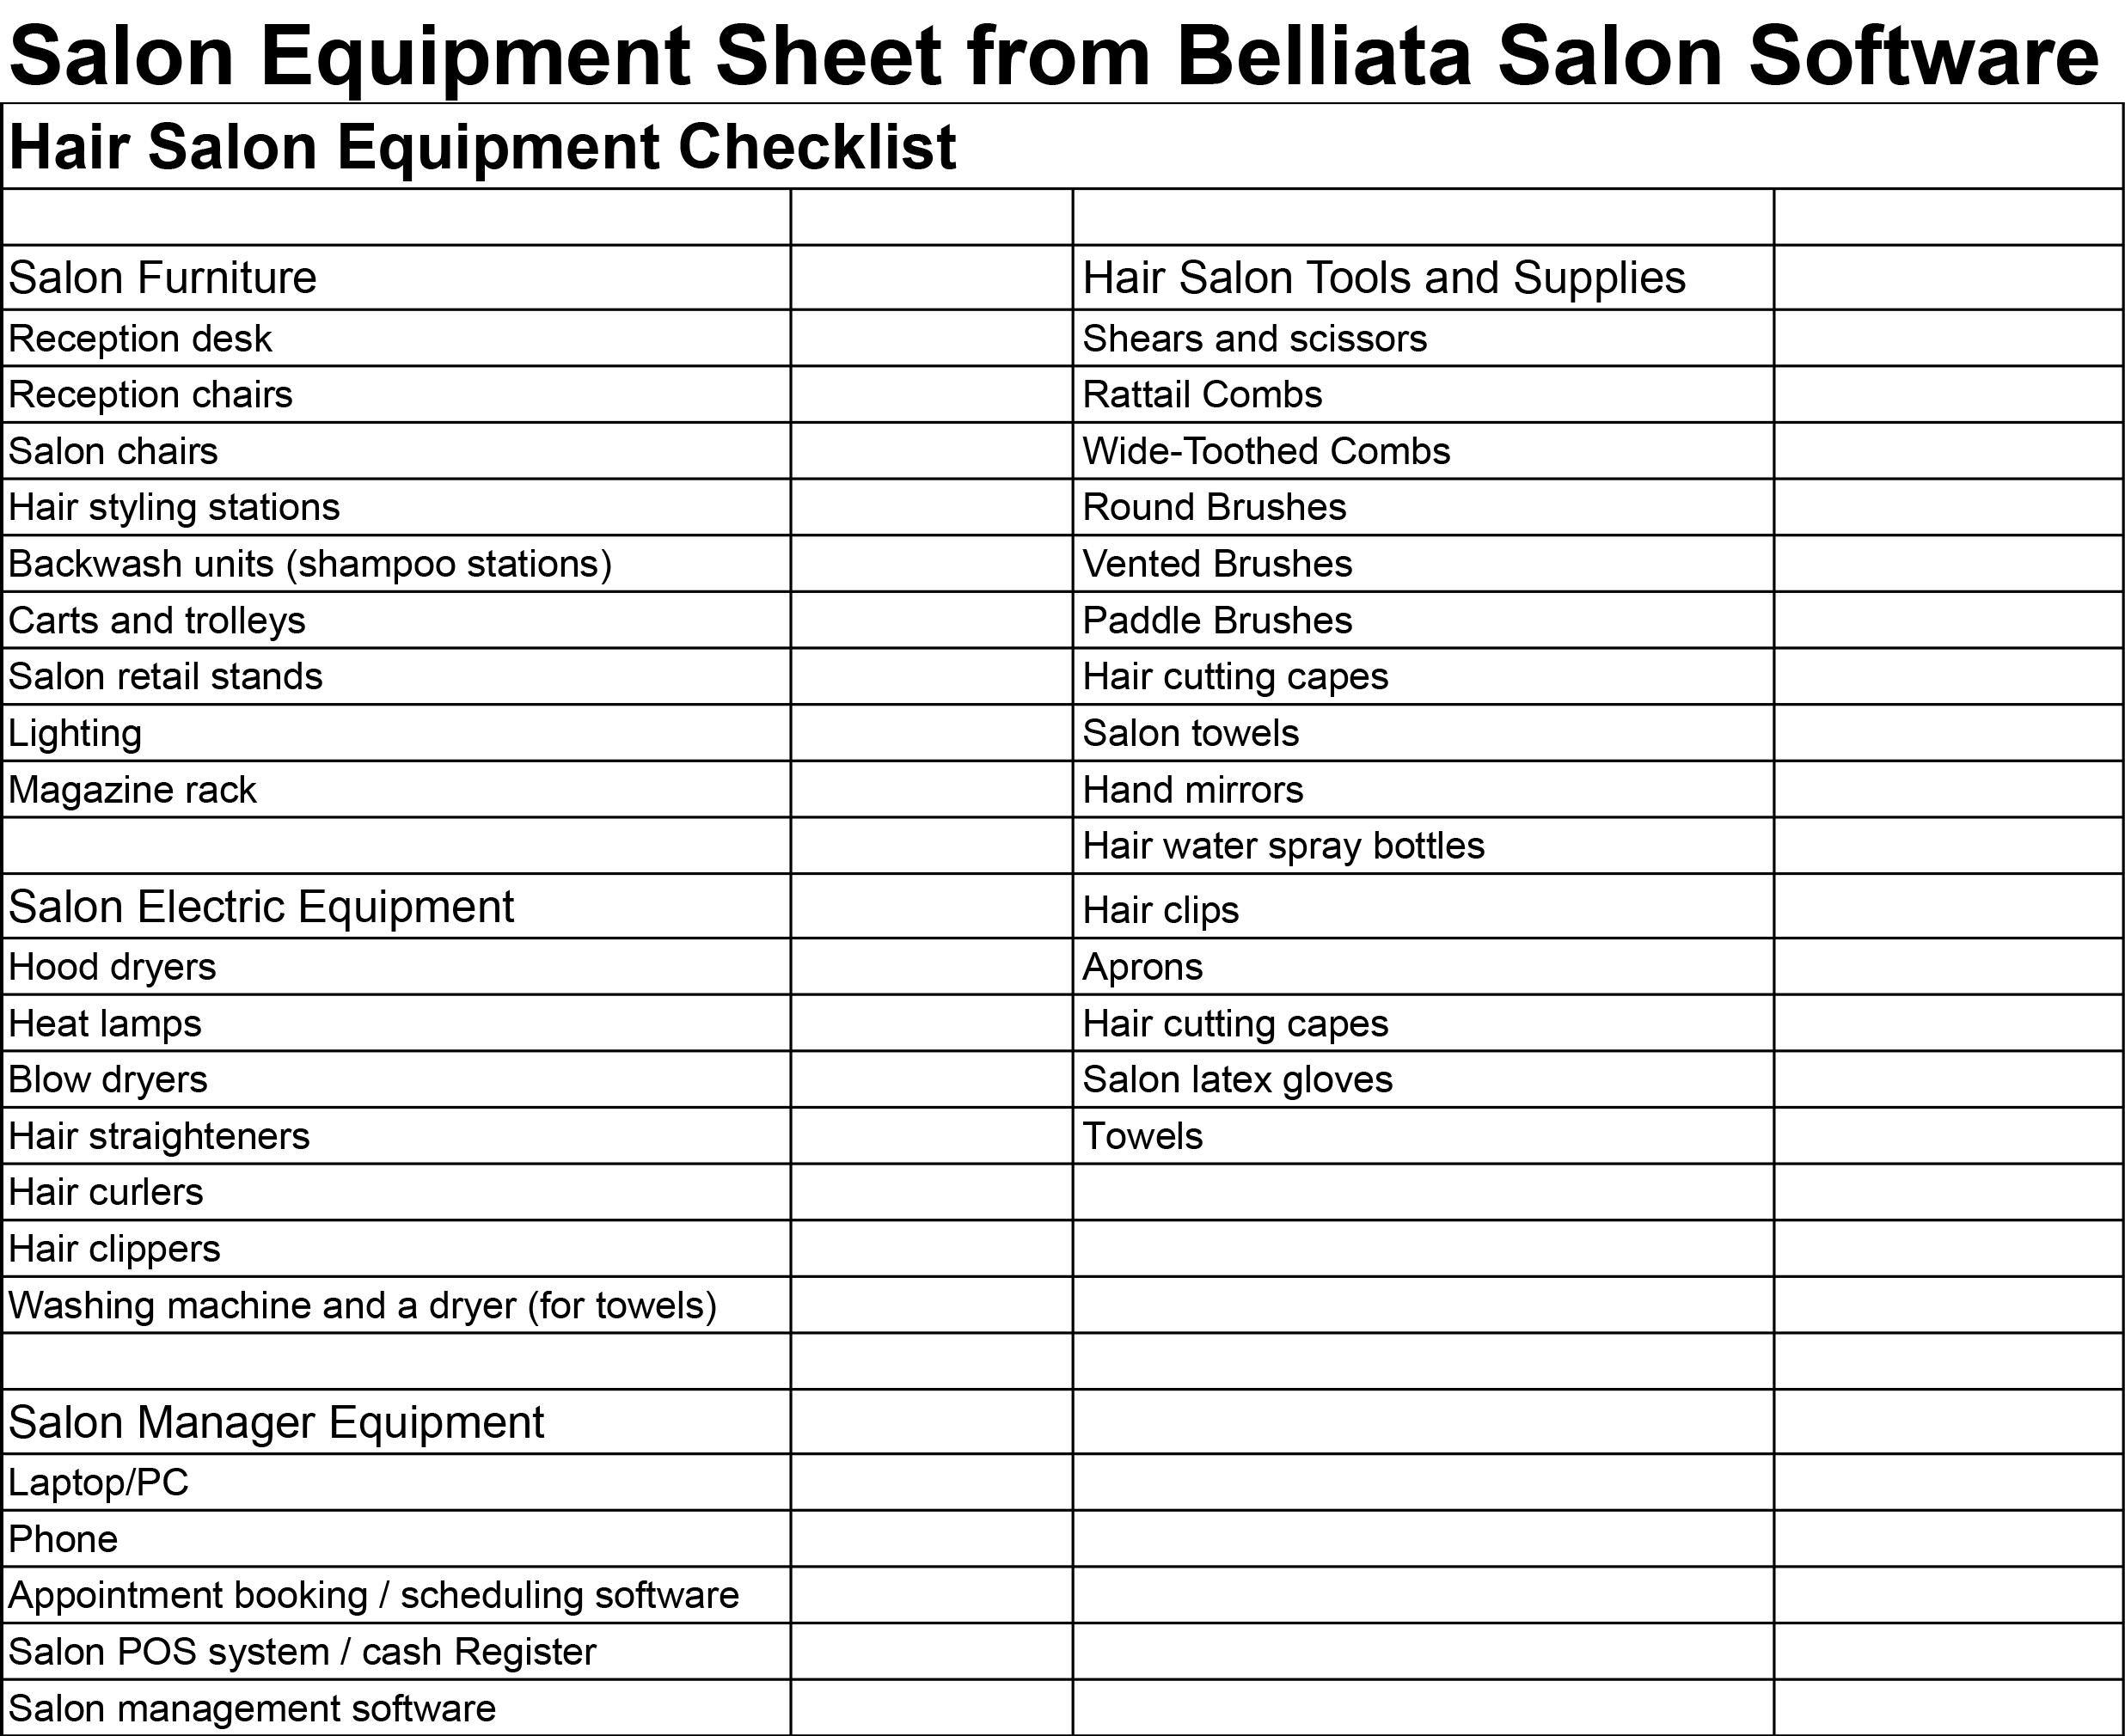 Hair salon equipment checklist